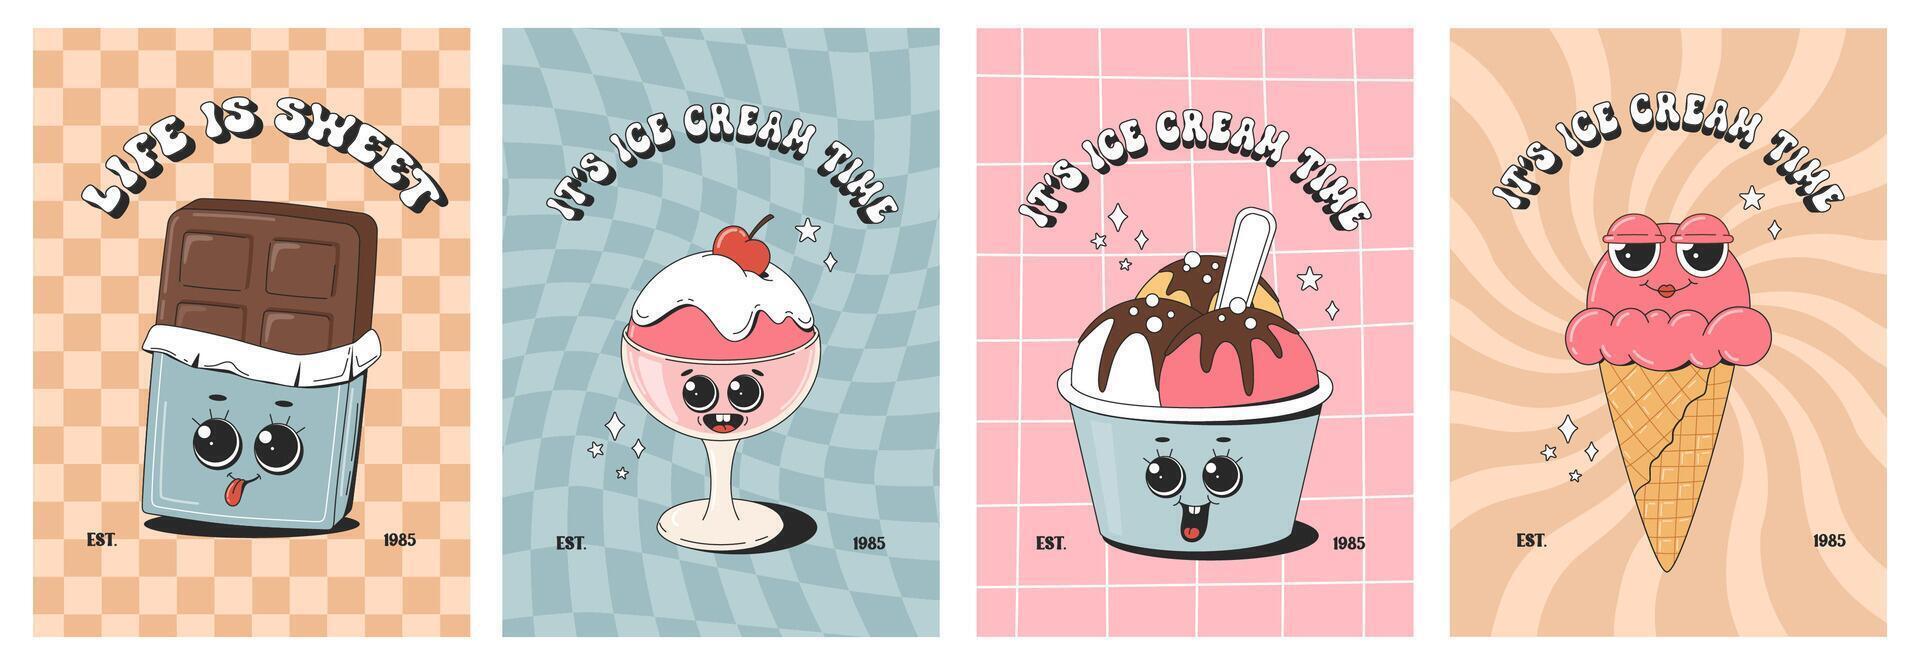 impostato di Vintage ▾ cartone animato manifesti con dolci. carino Groovy dolce torta, cioccolato, ghiaccio crema, cupcakes. illustrazione. vettore